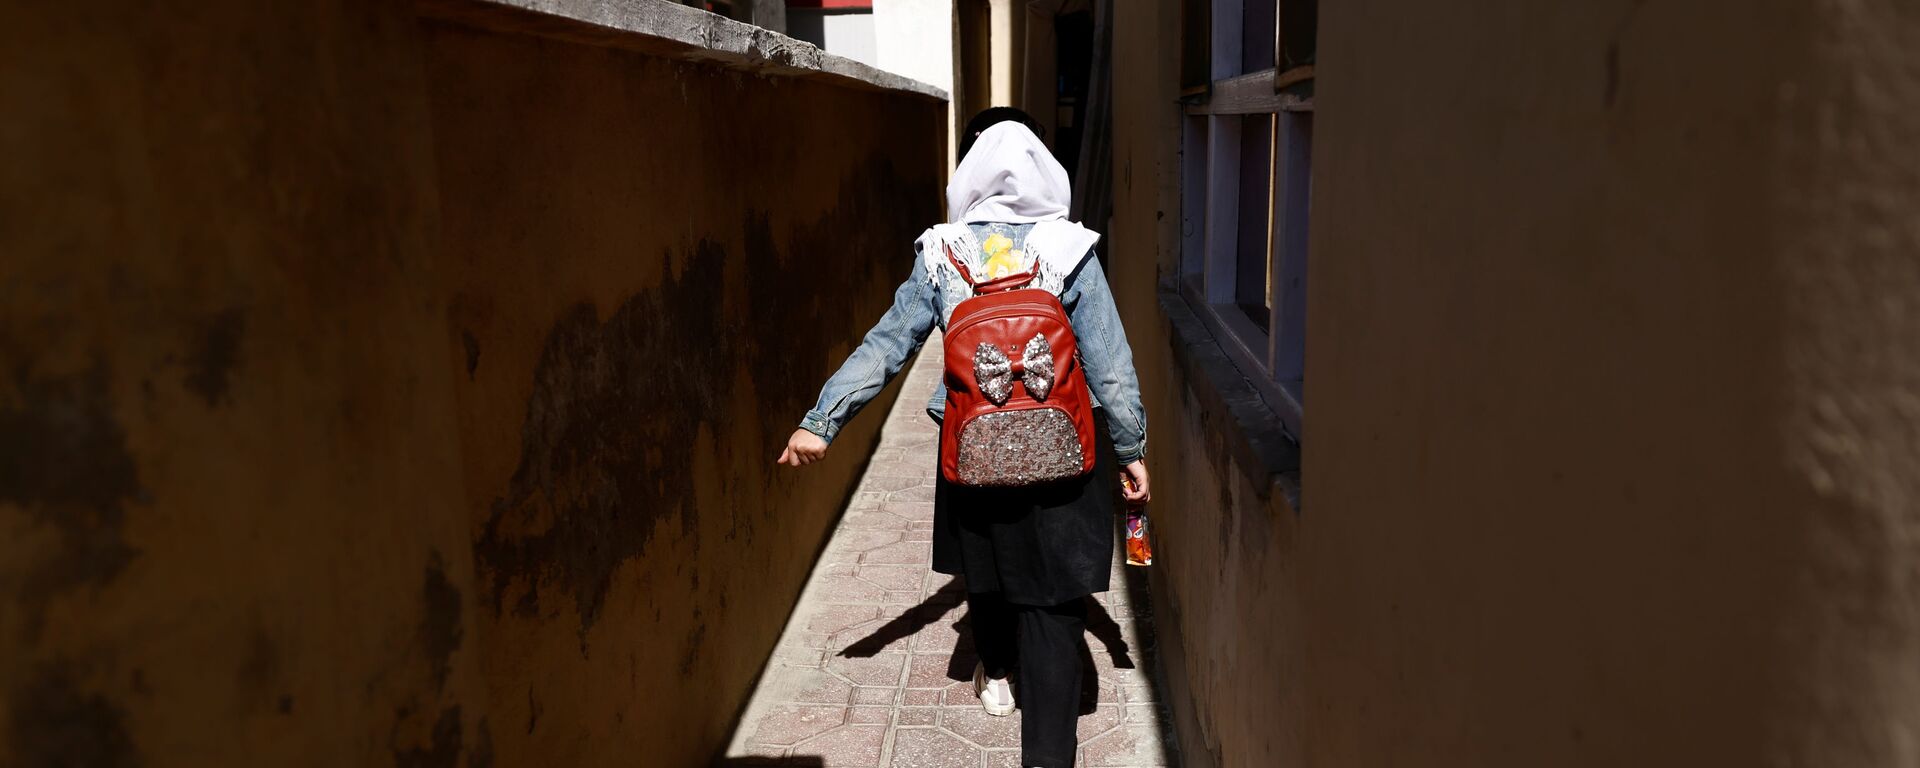 Ученица 4-го класса начальной школы возвращается домой, Кабул, Афганистан - Sputnik Тоҷикистон, 1920, 29.11.2021